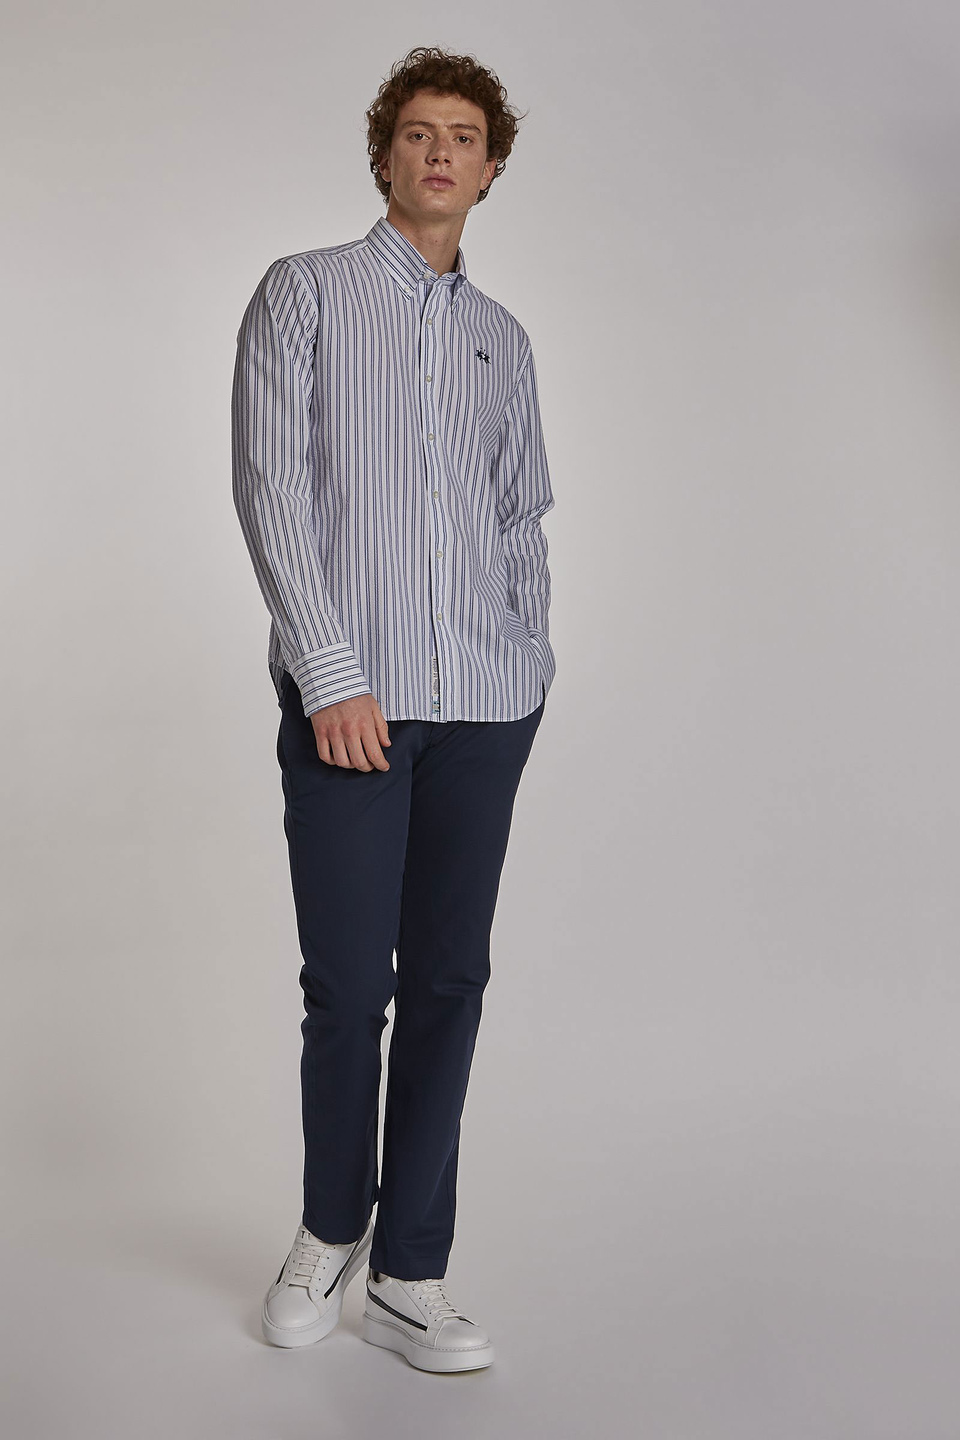 Chemise homme en coton à manches longues et coupe classique | La Martina - Official Online Shop